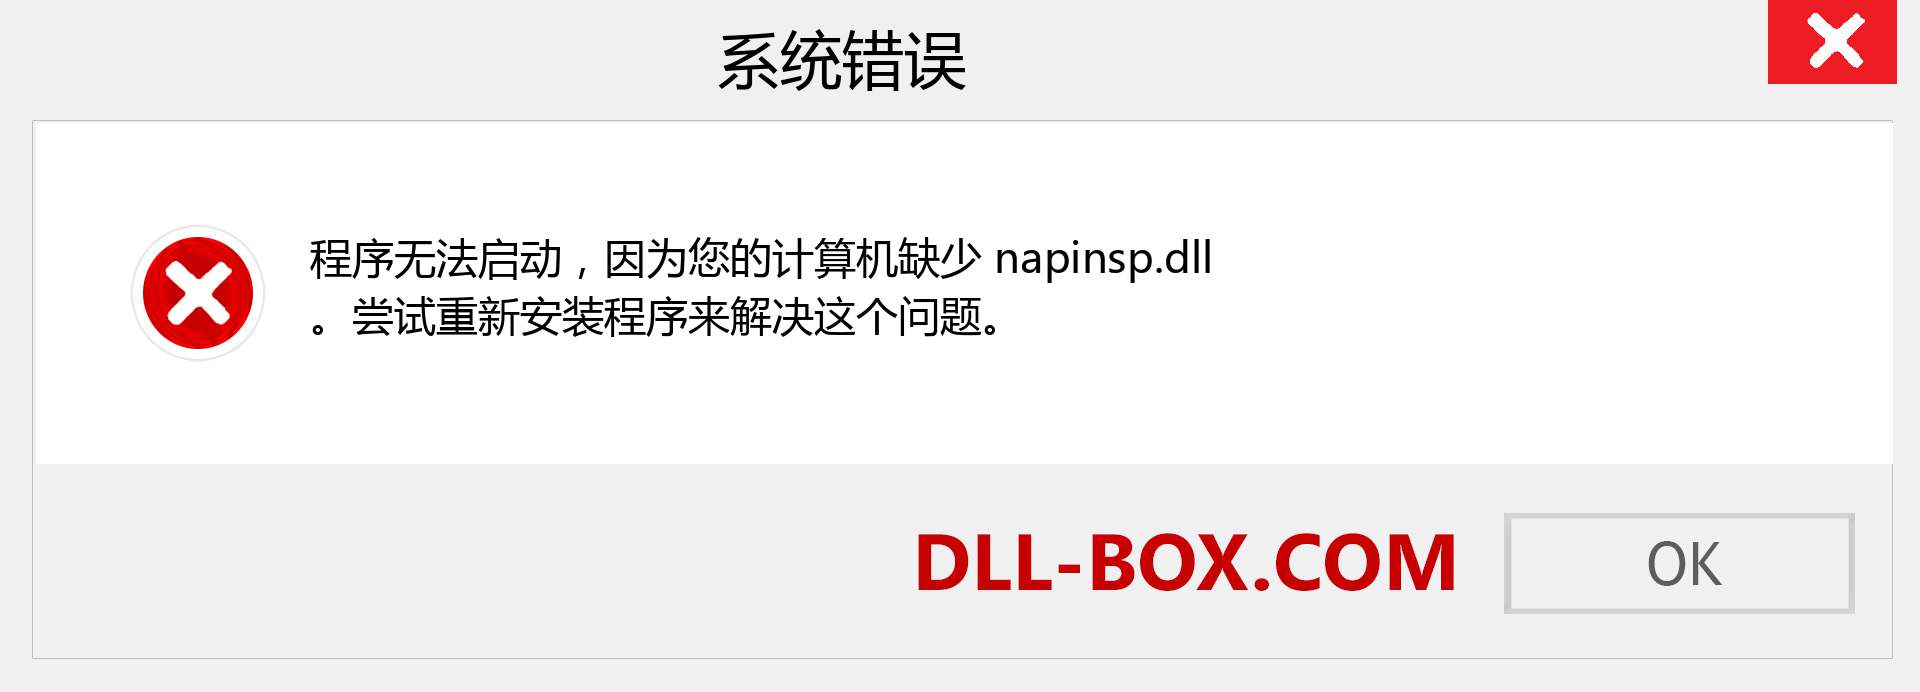 napinsp.dll 文件丢失？。 适用于 Windows 7、8、10 的下载 - 修复 Windows、照片、图像上的 napinsp dll 丢失错误